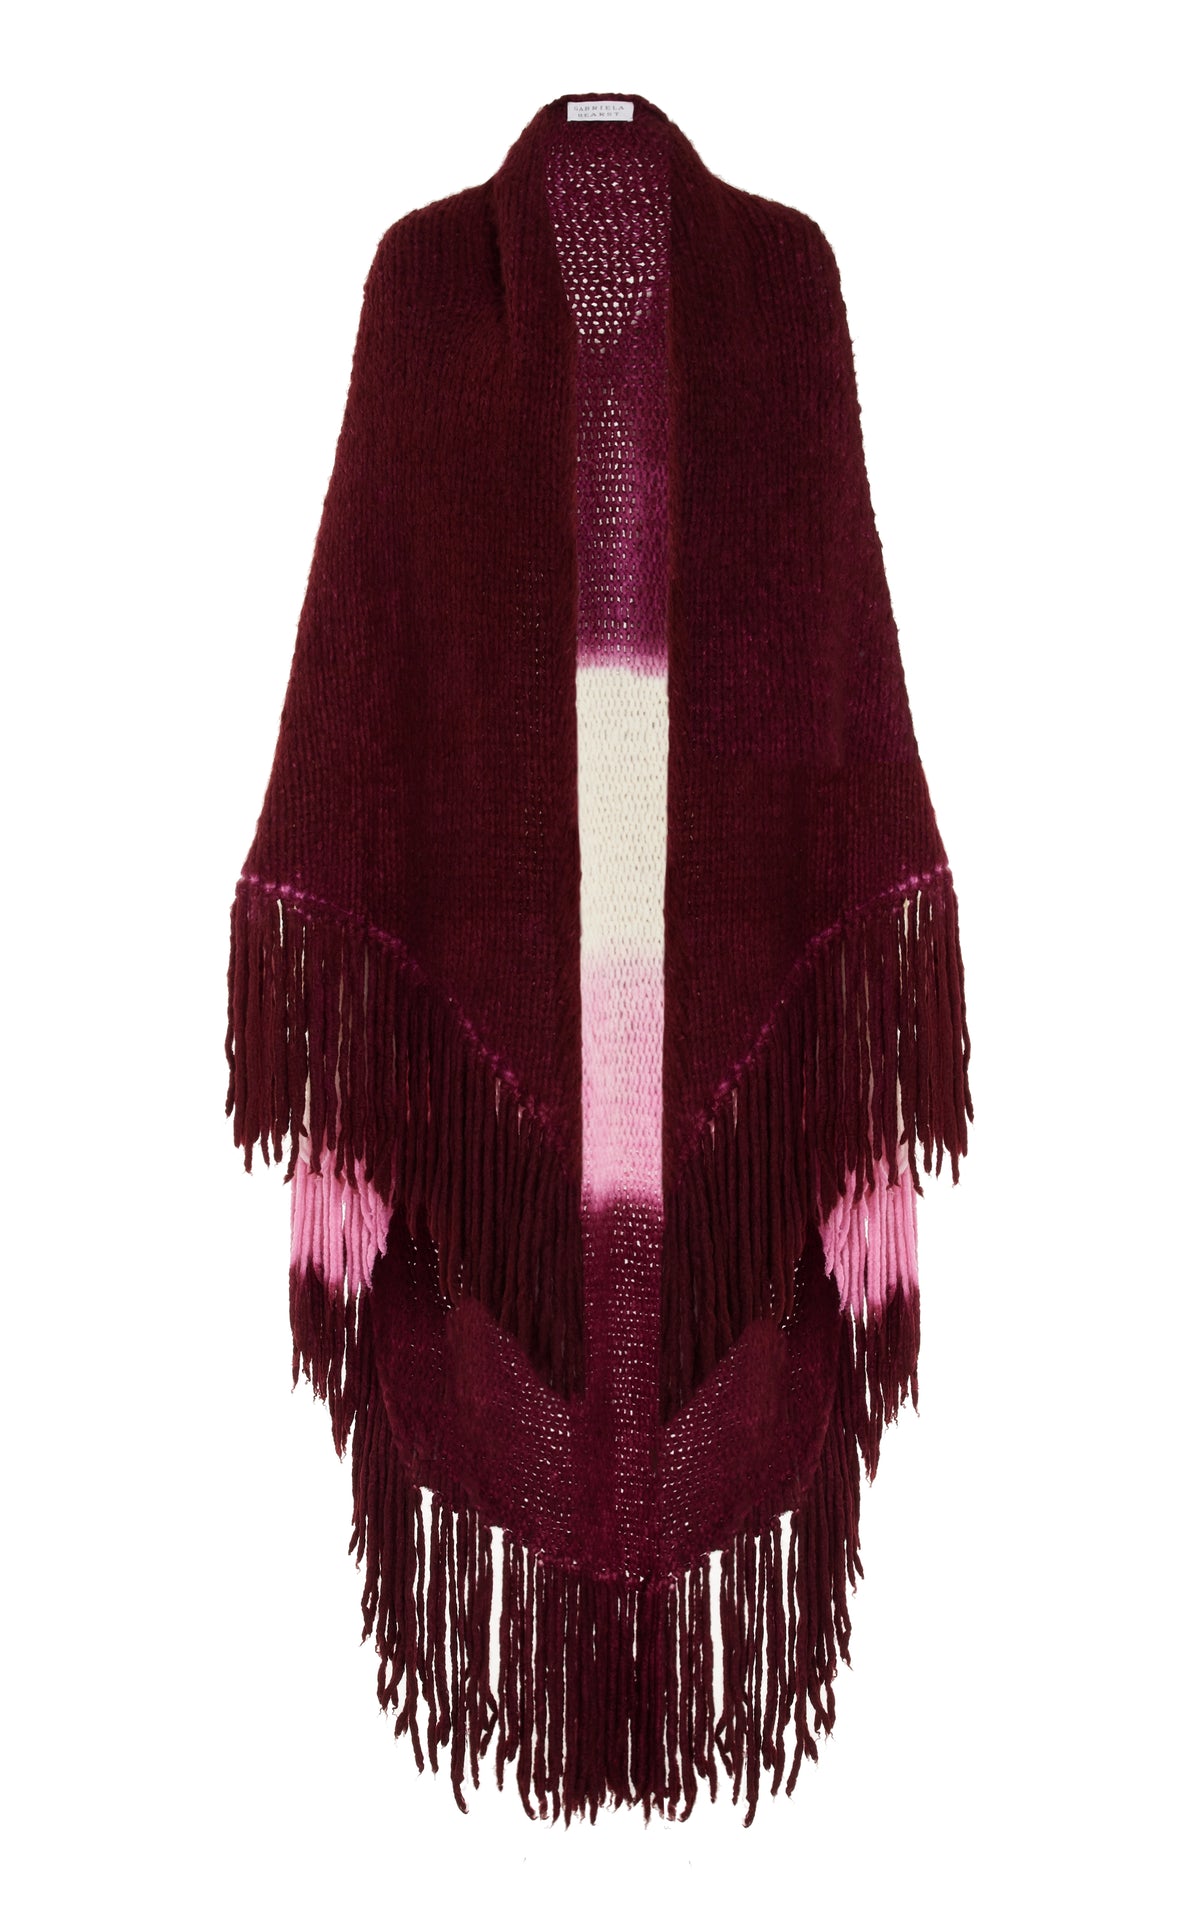 Lauren Knit Wrap in Dip Dye Bordeaux Multi Welfat Cashmere